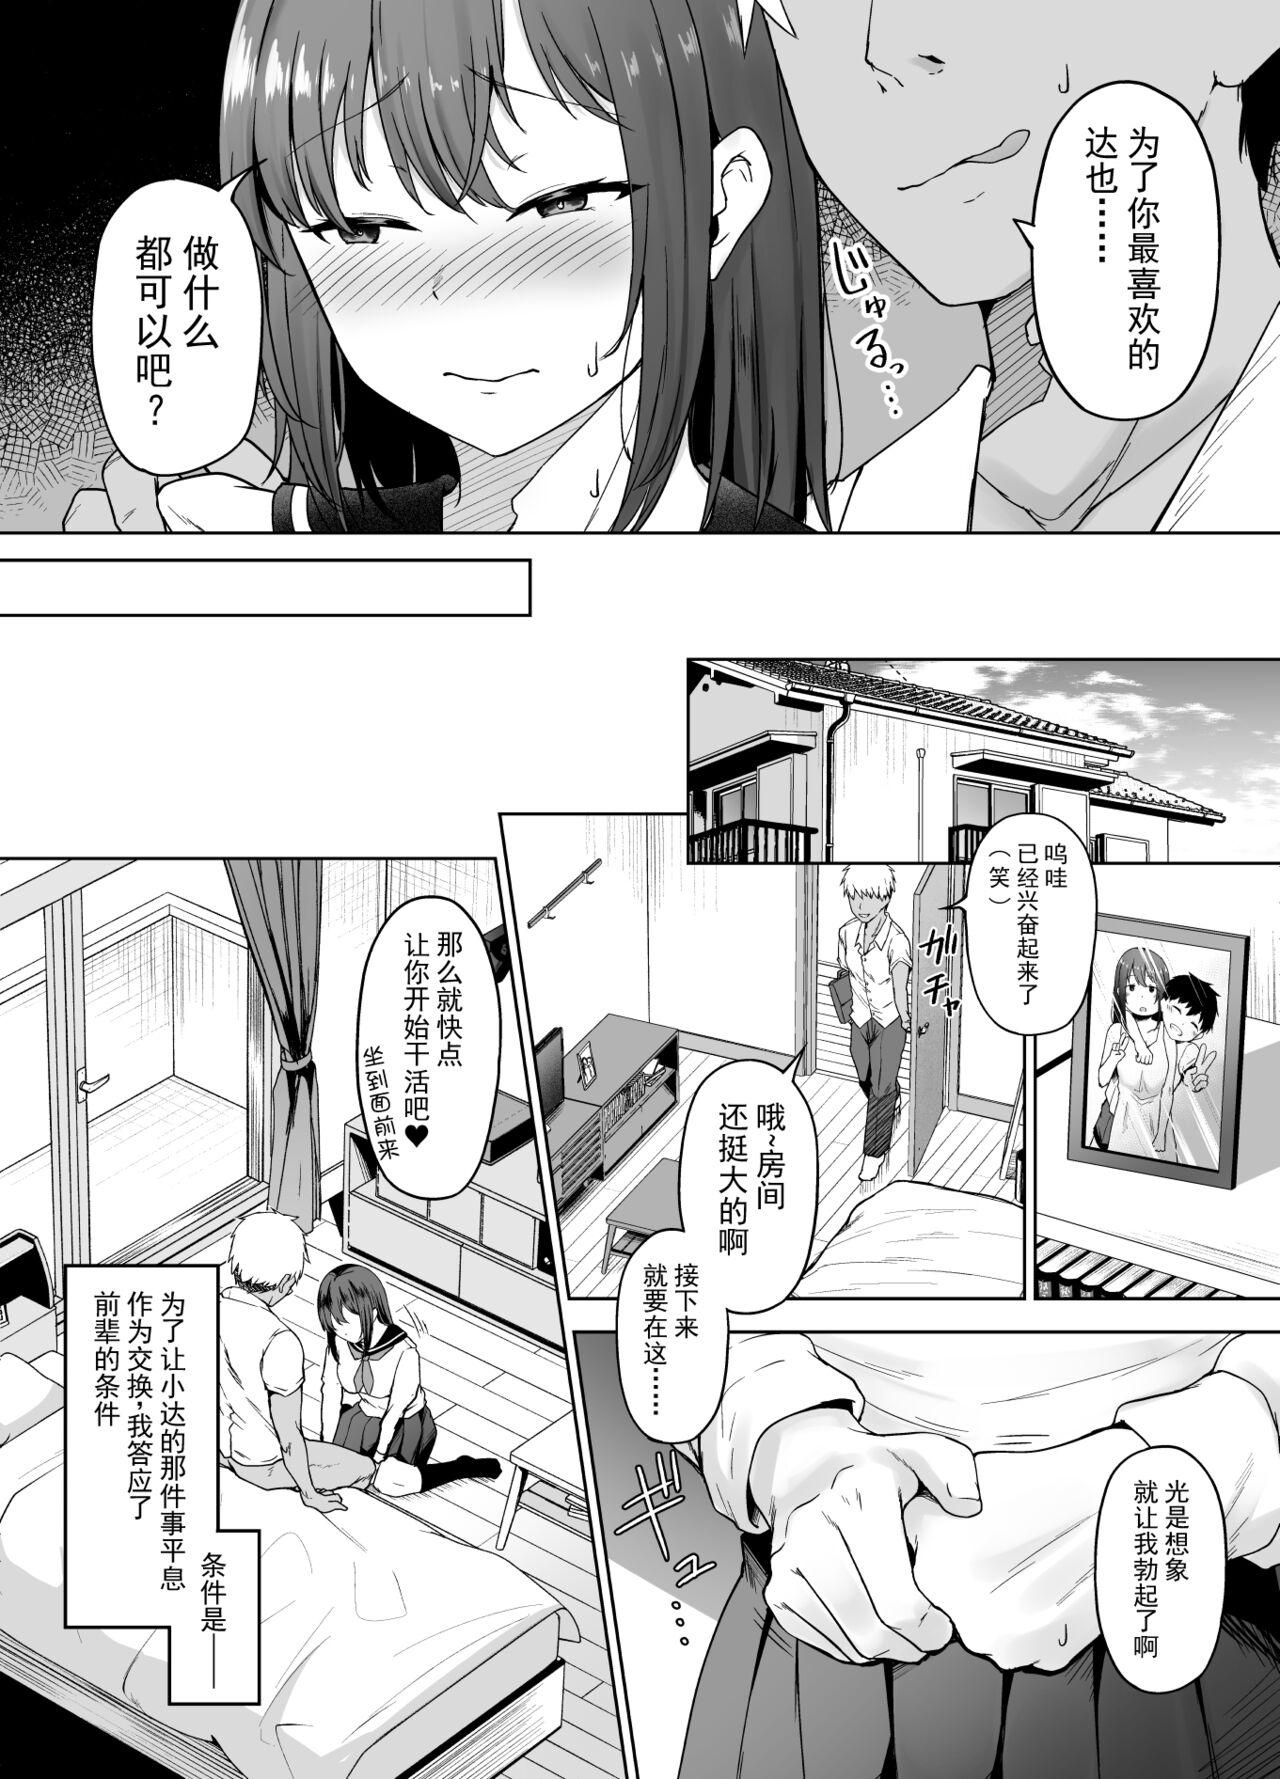 Analfucking Ichizu na Kanojo ga Ochiru Toki | 专一的她堕落的瞬间 - Original Emo - Page 7